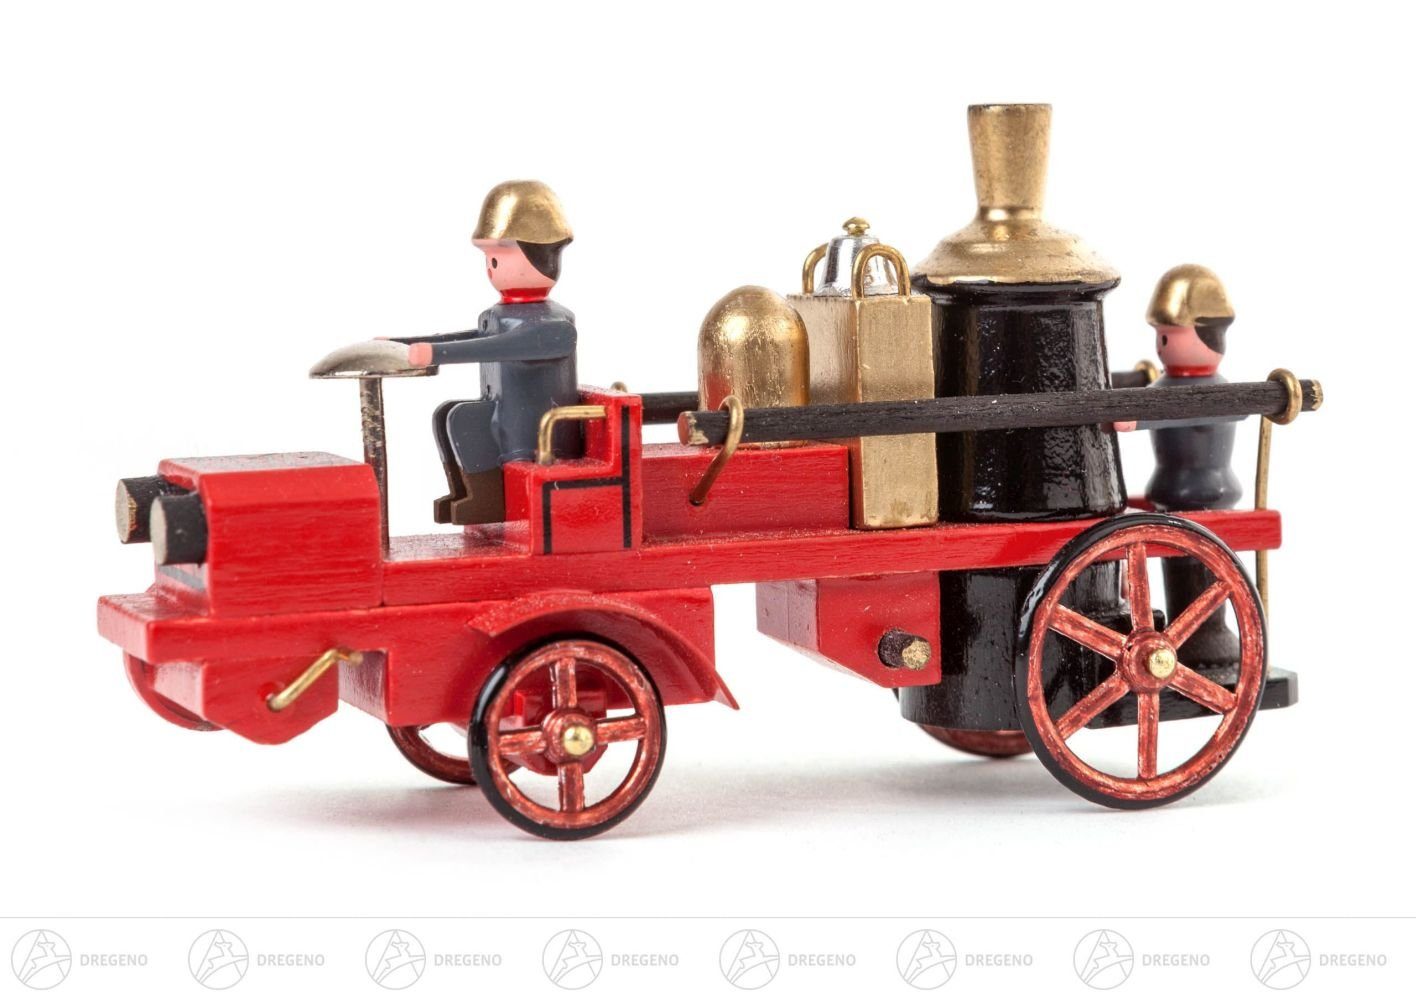 Dregeno Erzgebirge Weihnachtsfigur Miniatur Frontgetriebene Dampfspritze Höhe ca 4 cm NEU, Metallräder | Dekofiguren